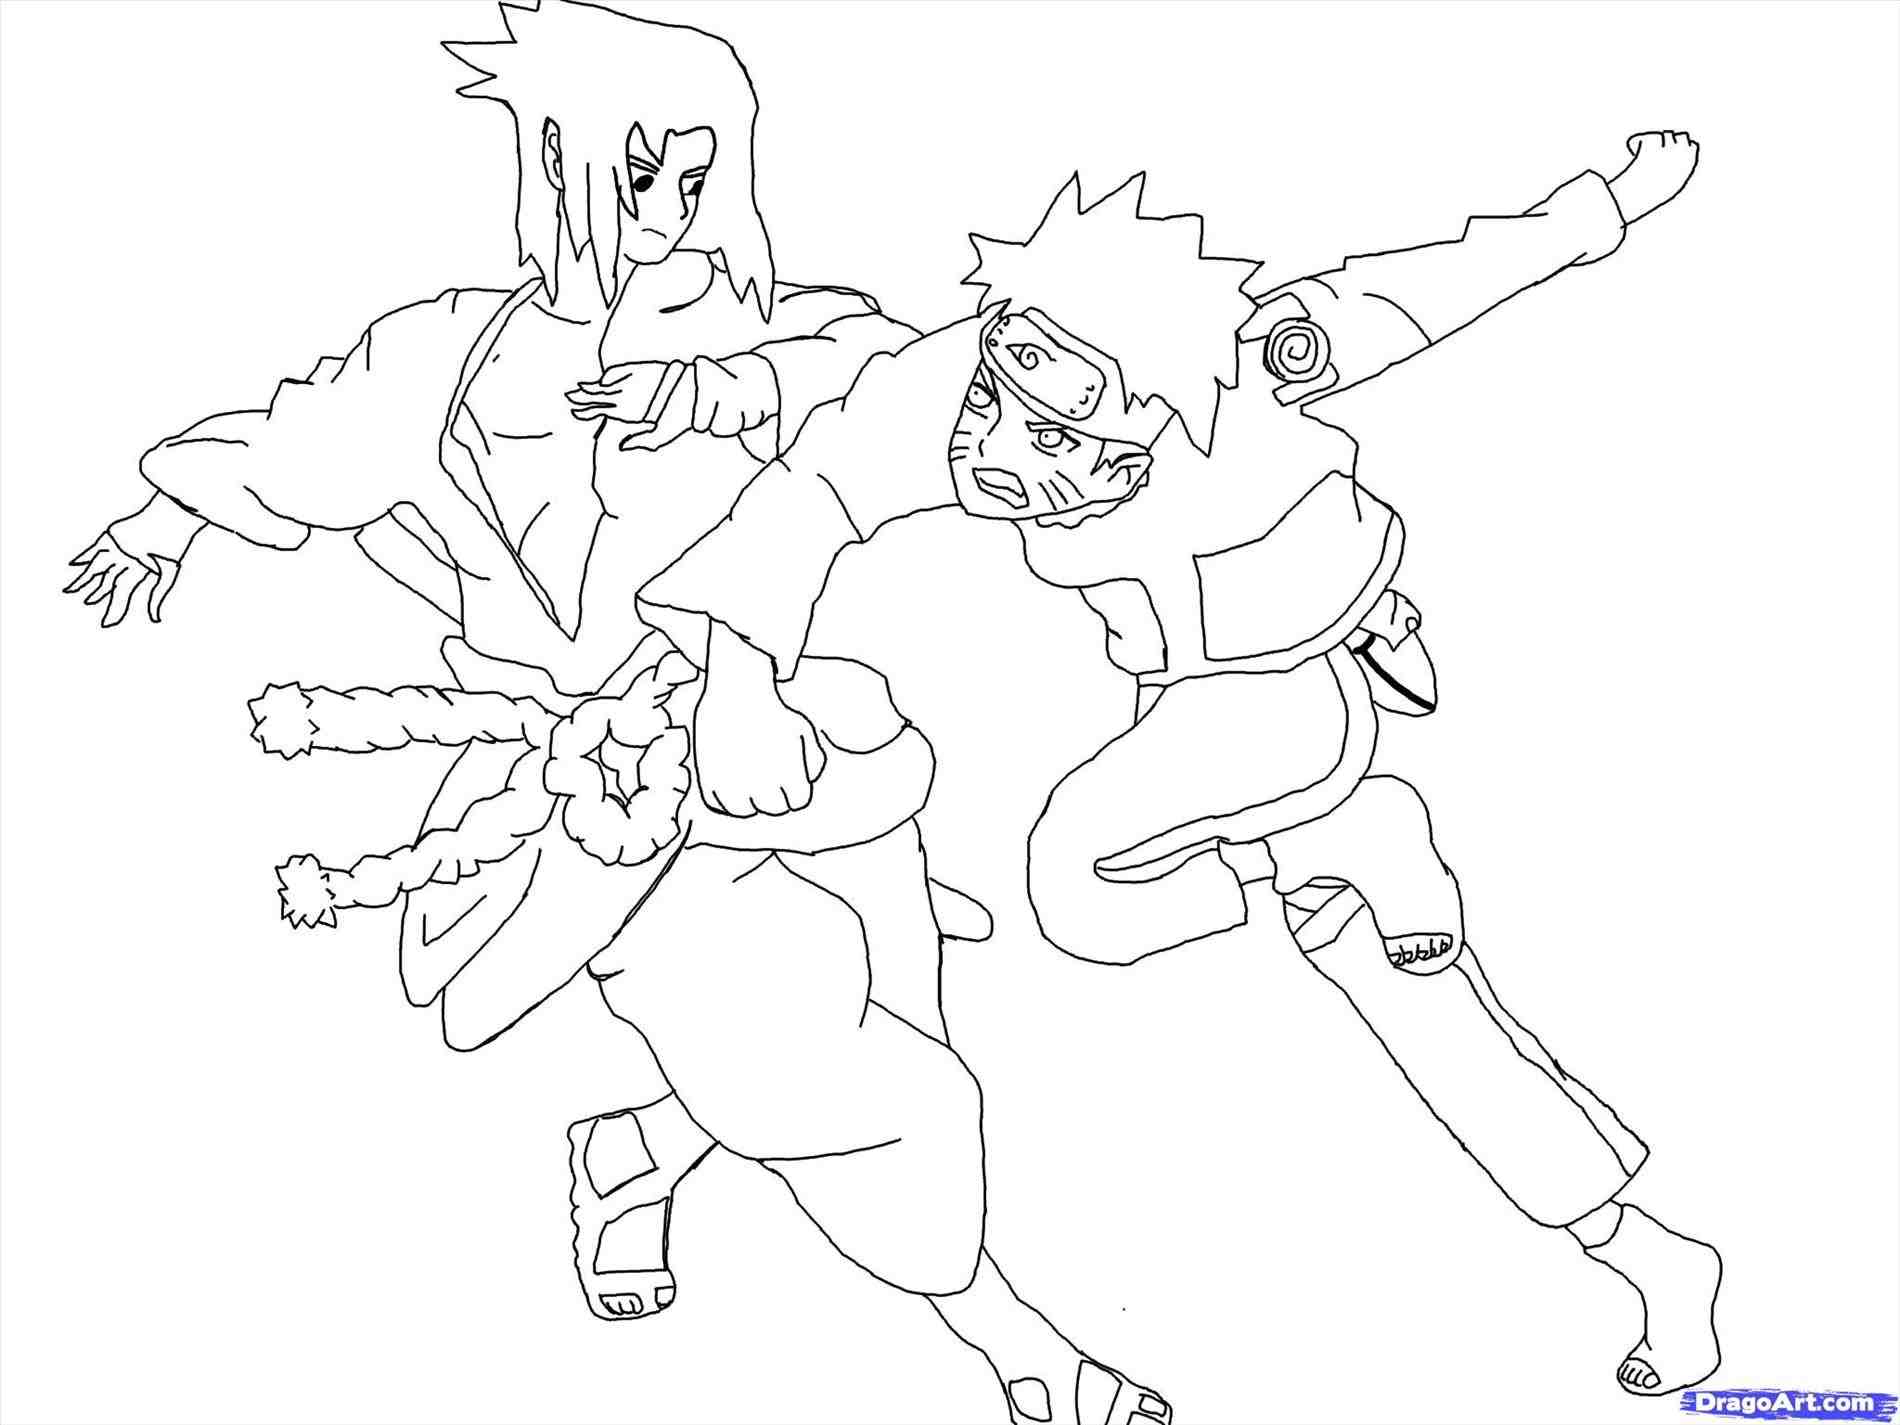 Naruto Vs Sasuke Drawing at GetDrawings | Free download